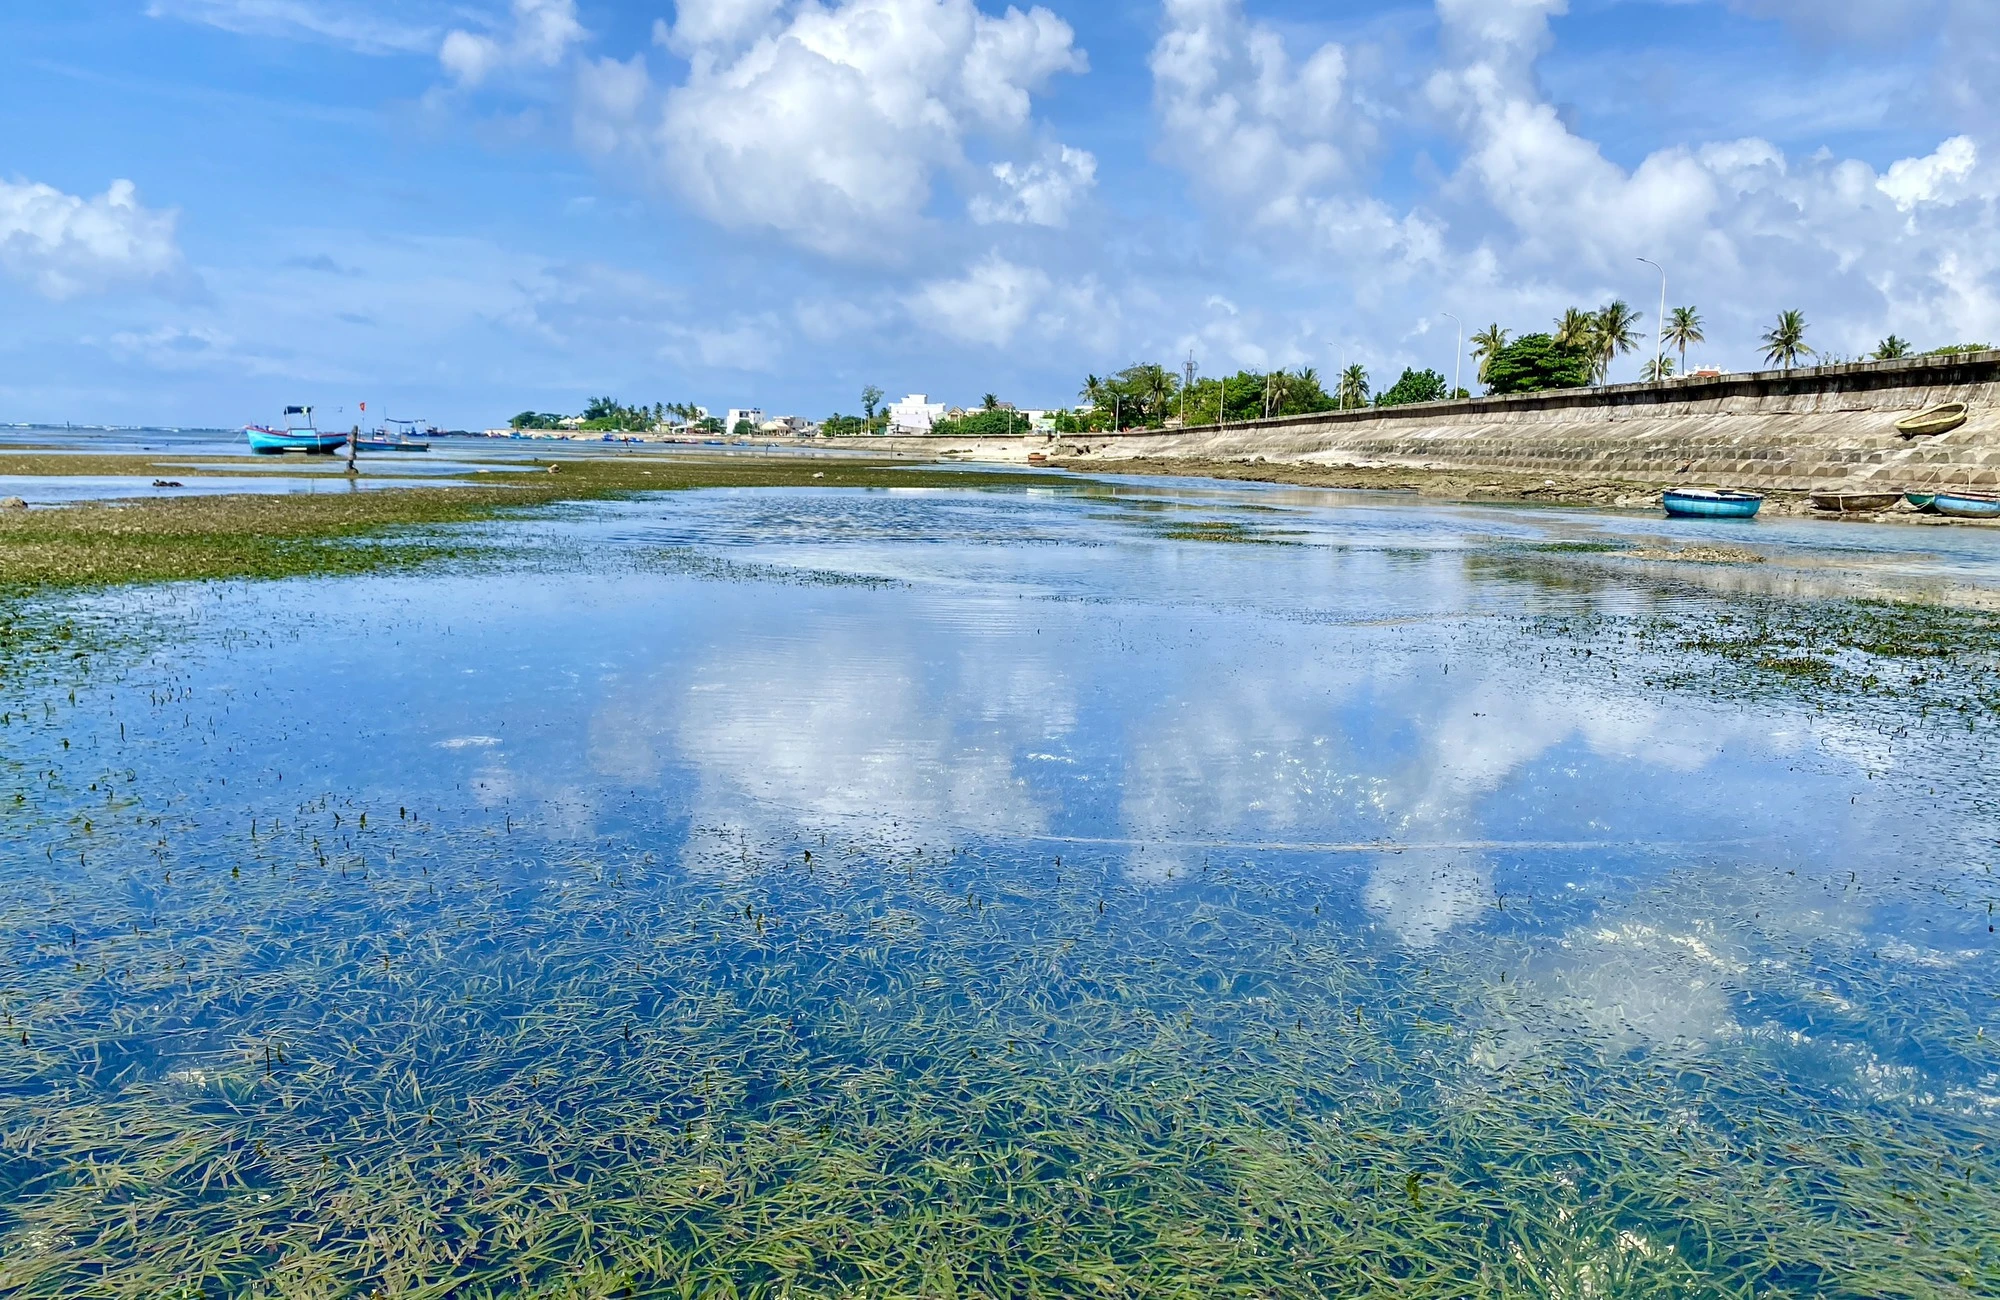 Rong mơ lá hẹ mọc ở gần bờ trên đảo Lý Sơn đẹp như một bức tranh - Ảnh 1.